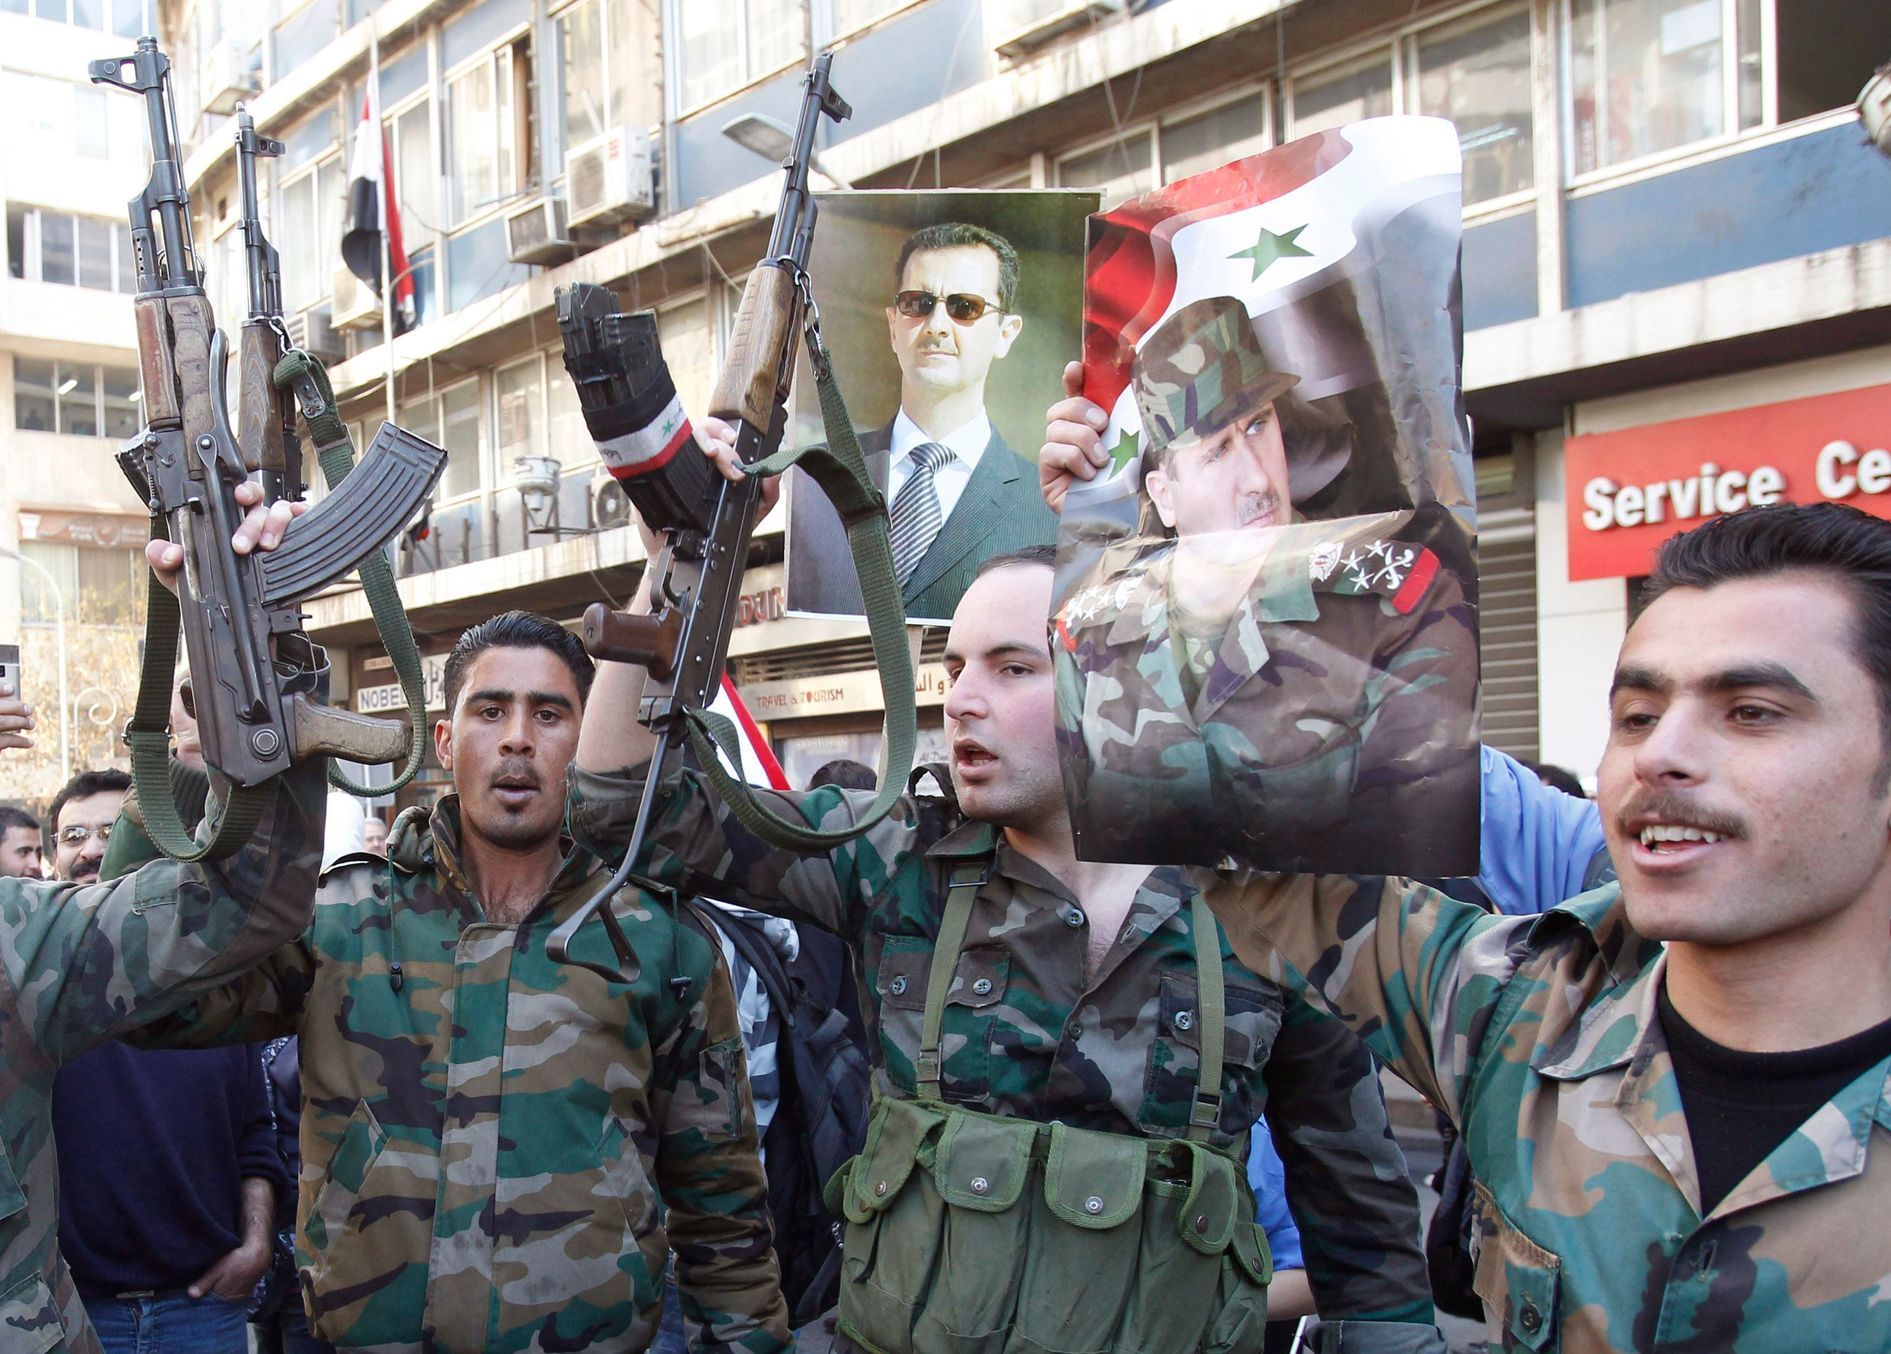 Asadovi ozbrojenci, březen 2014, Damašek